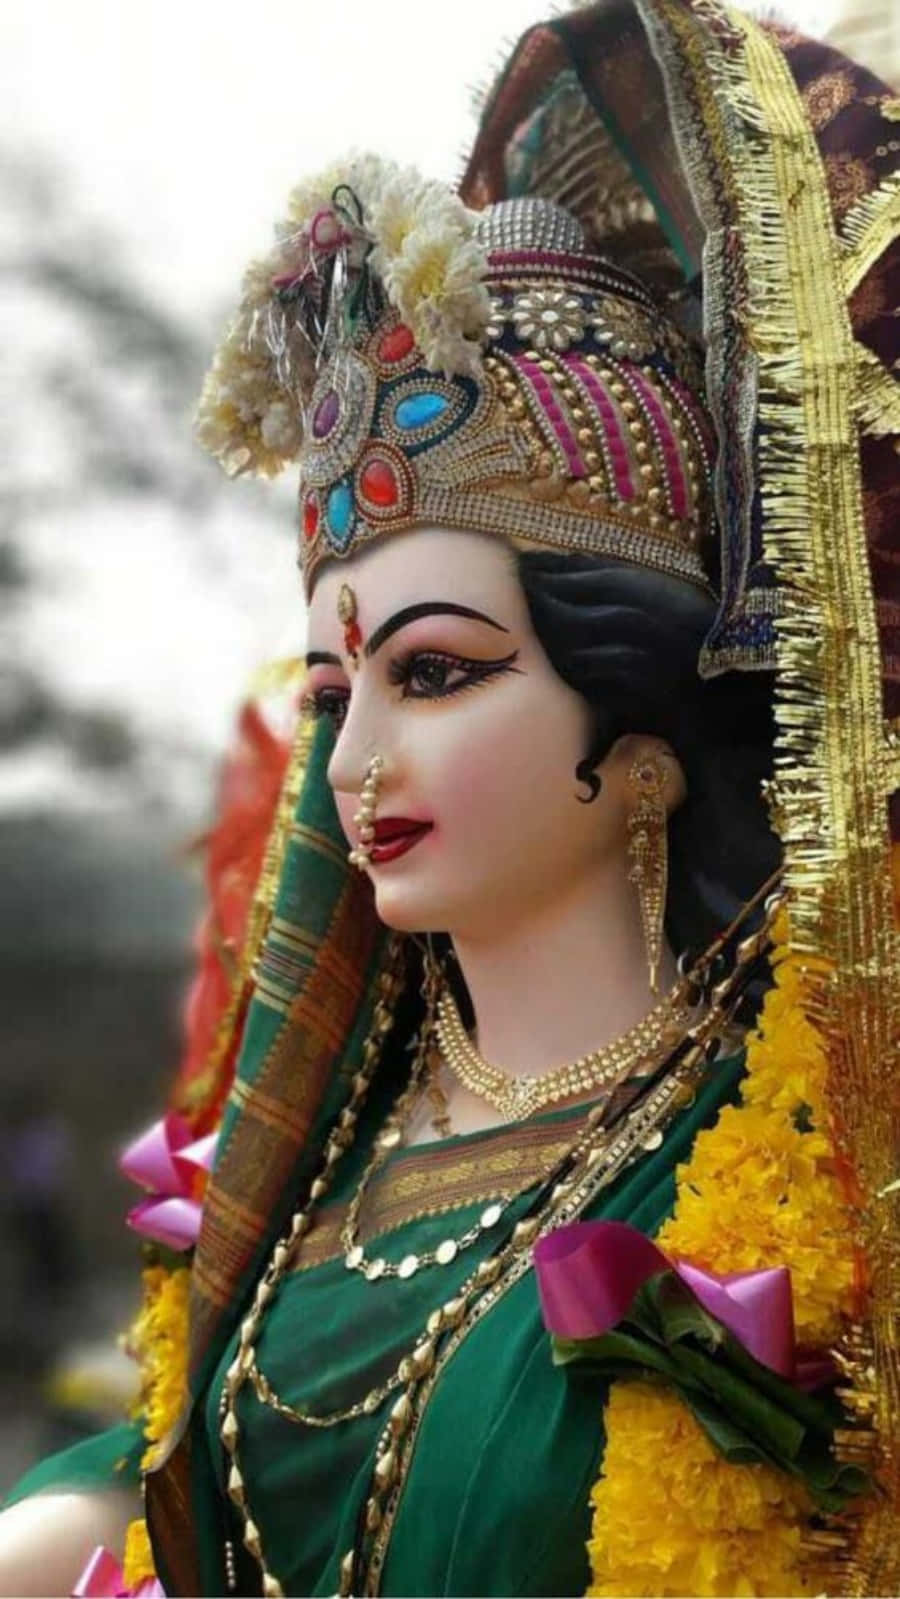 Imagende Durga Maa En Posición Lateral